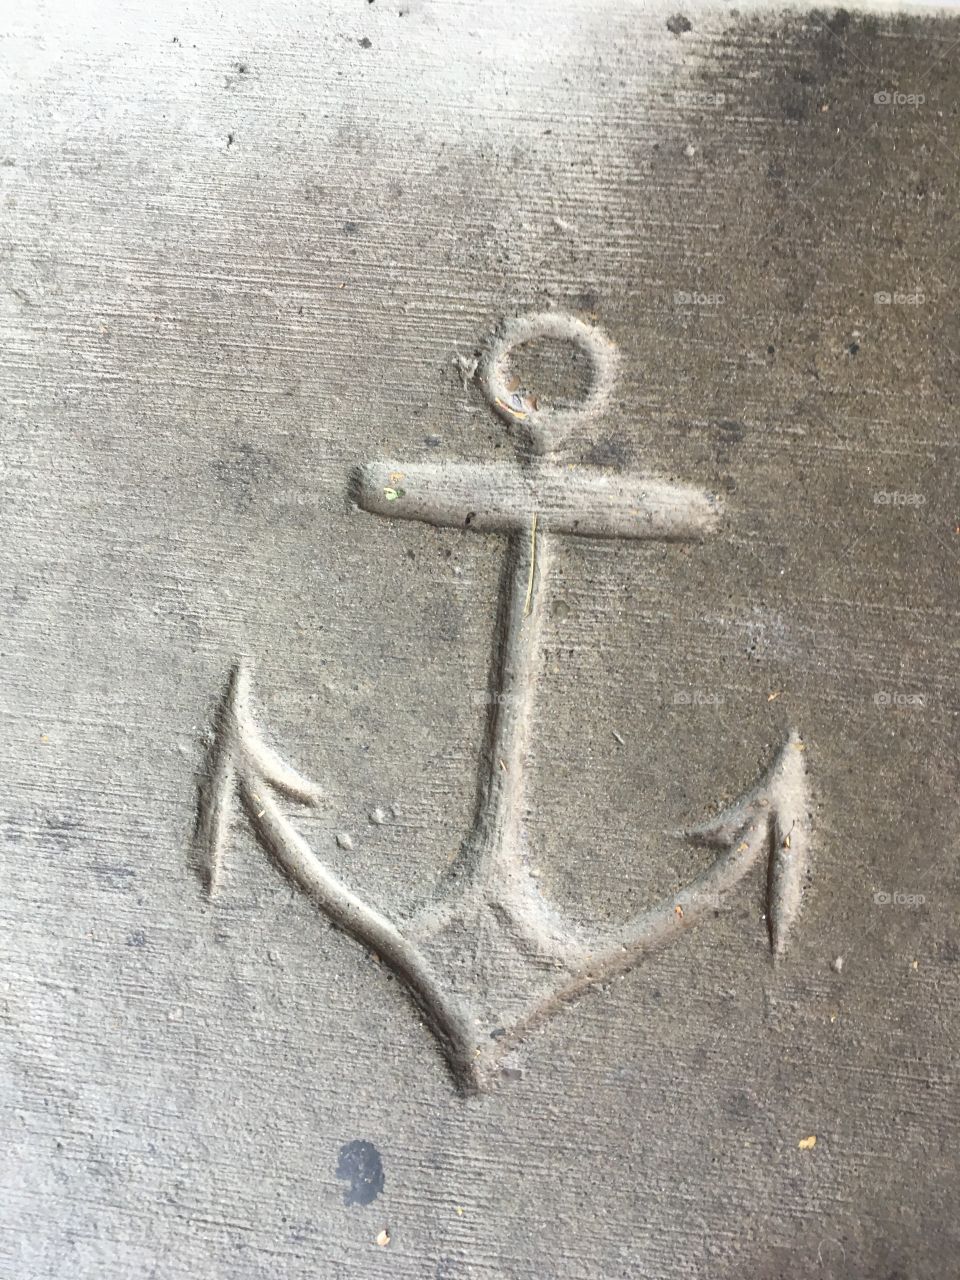 The anchor bar 